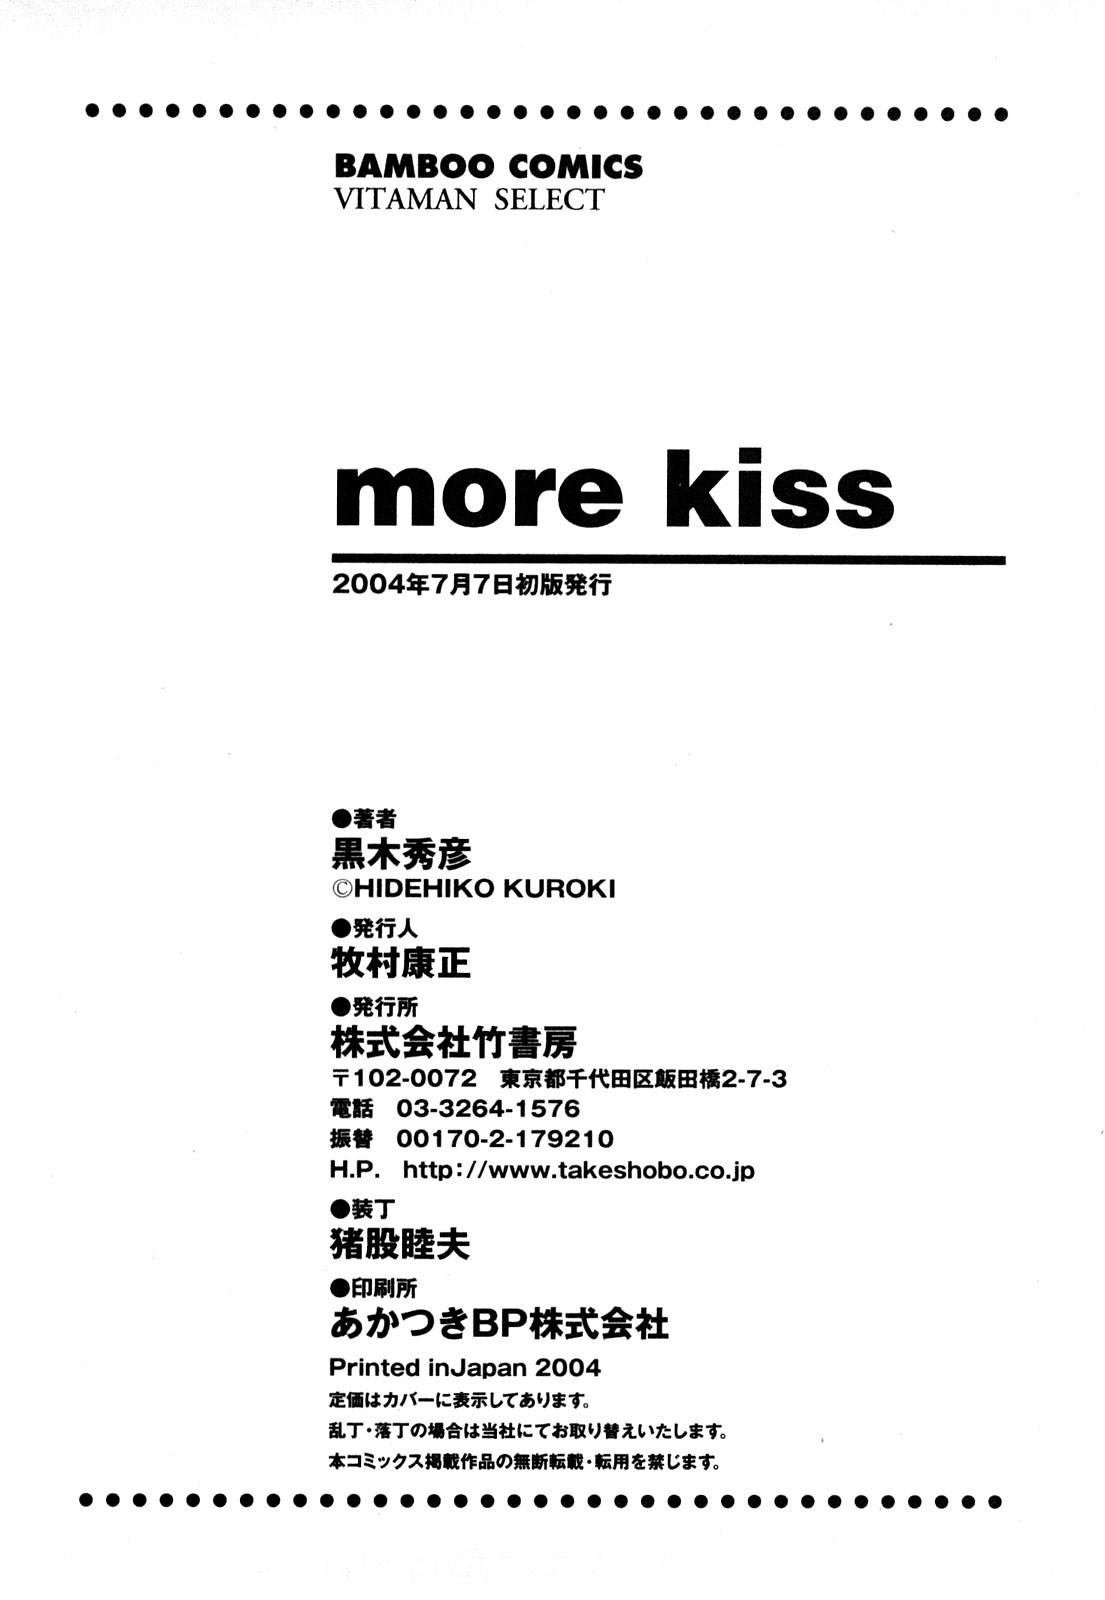 More Kiss 226